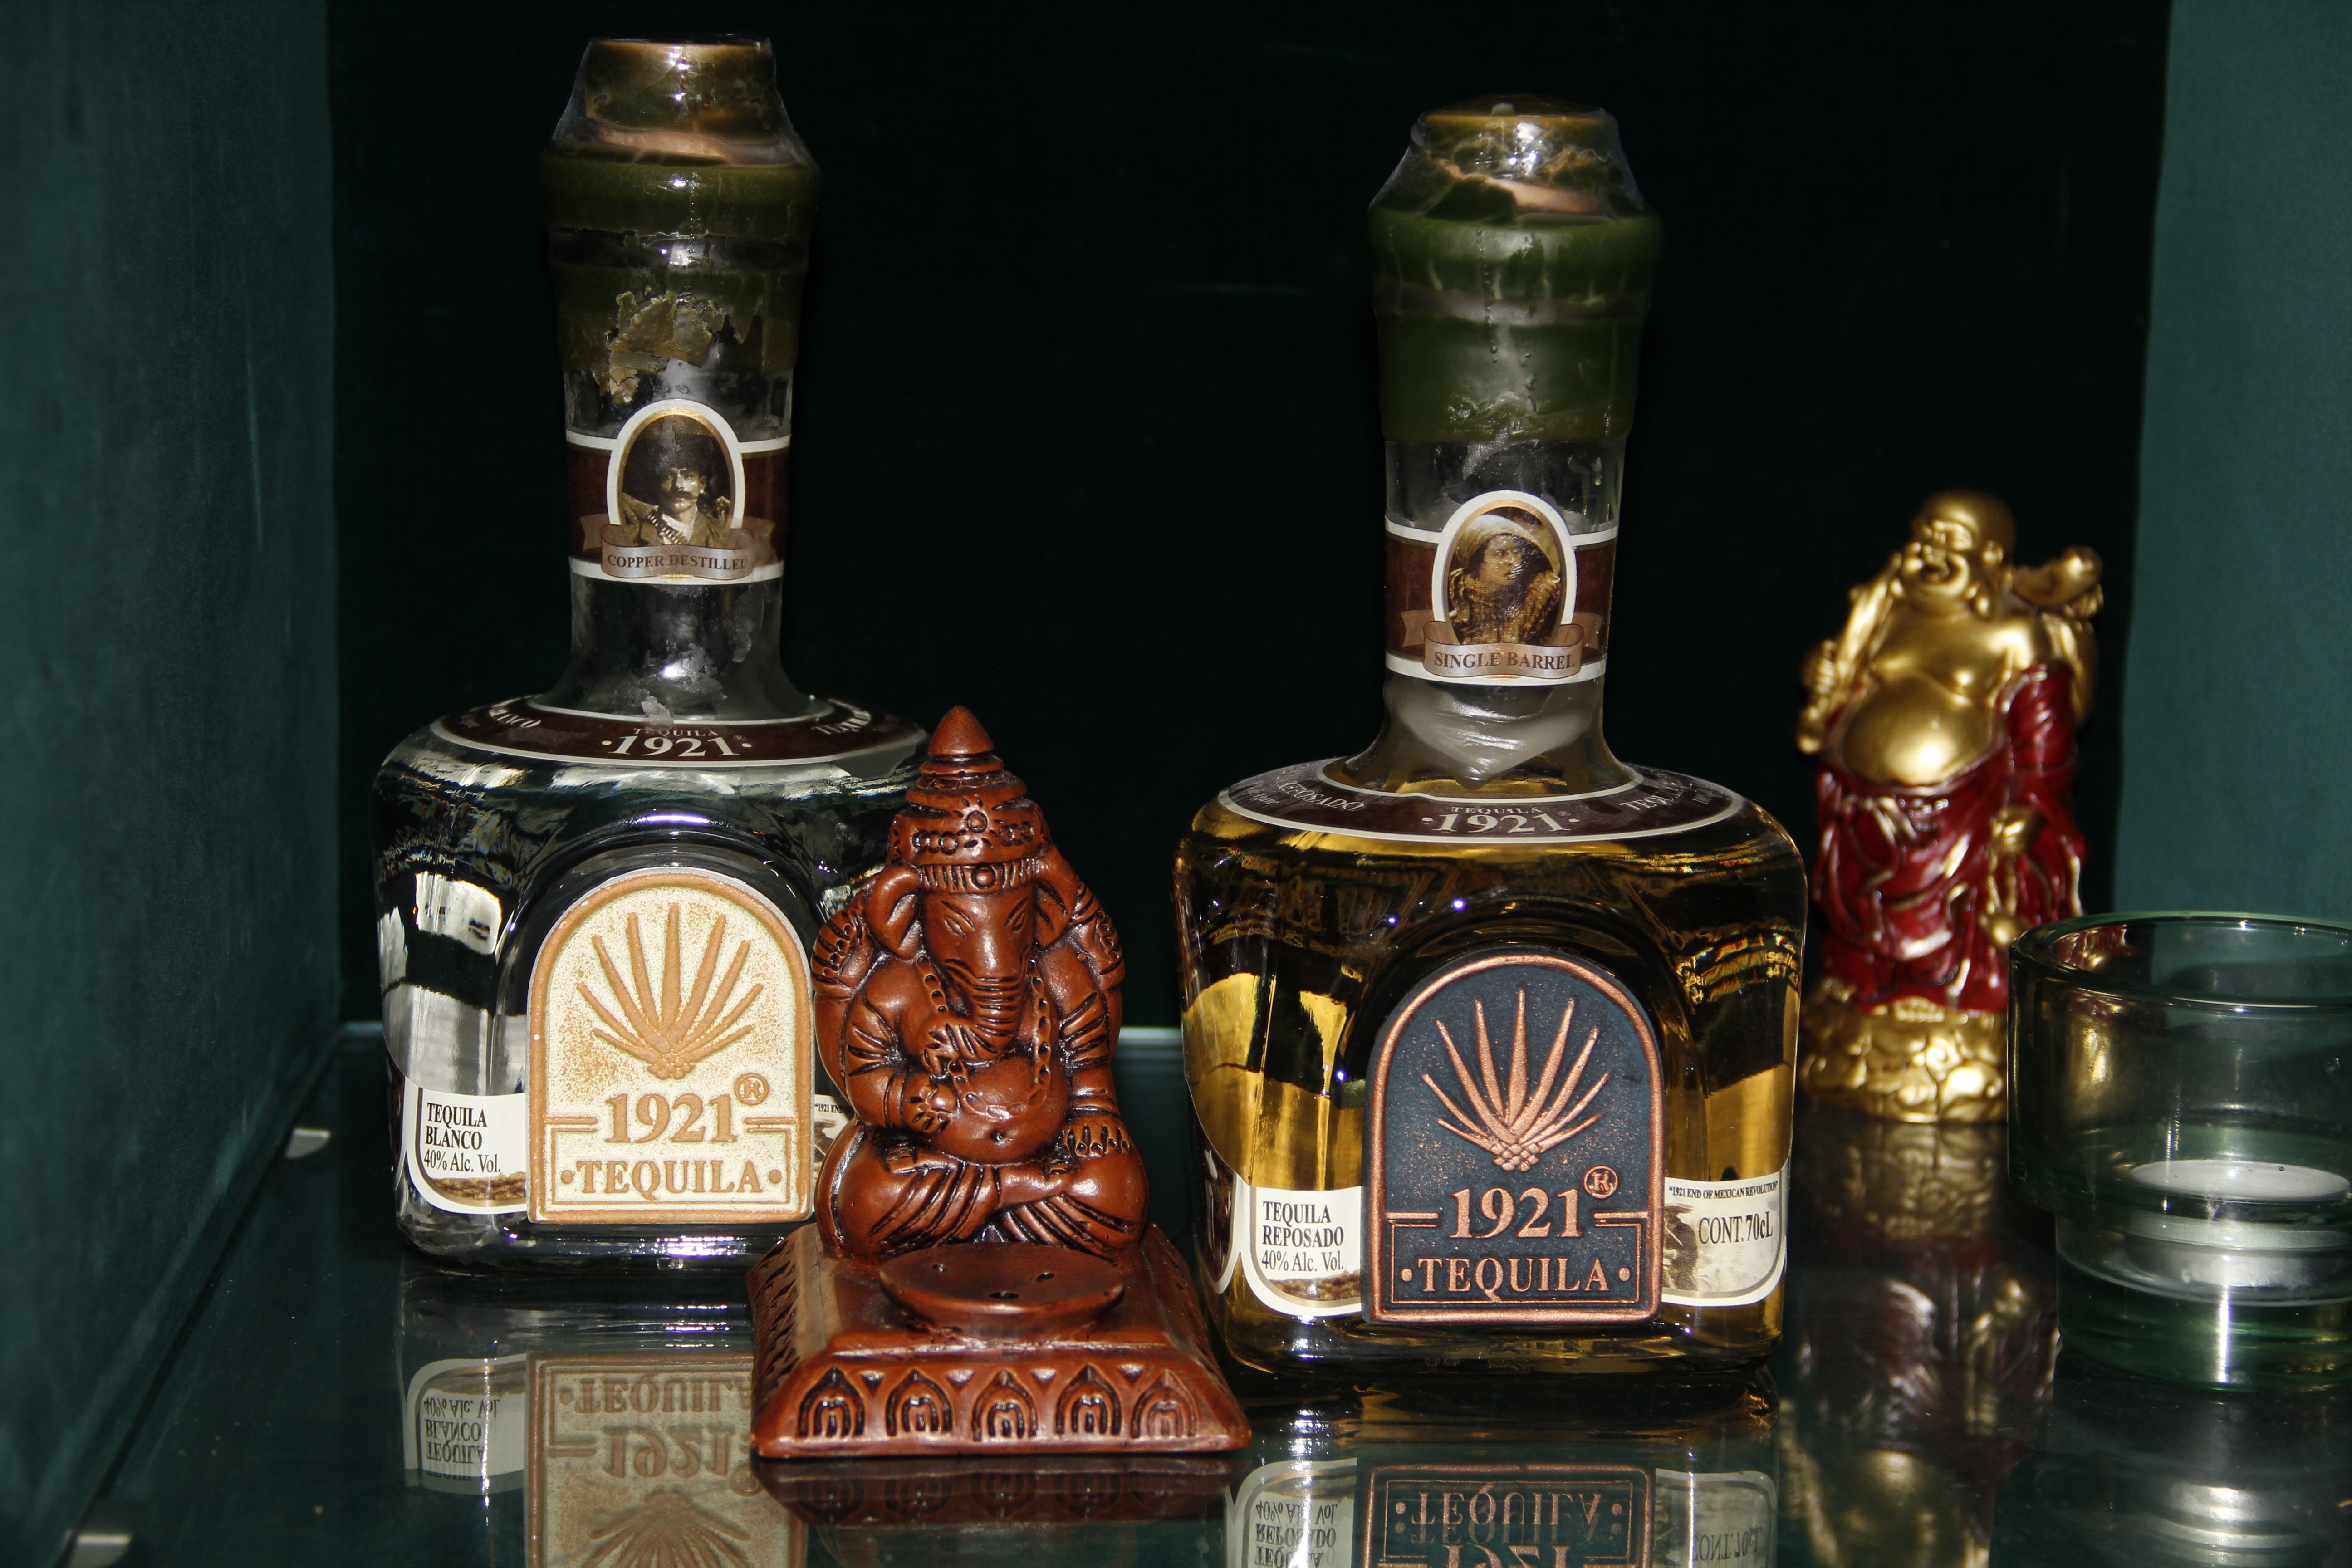 In einer Vitrine steht die Hindu-Gottheit Ganesha gleich neben einer Tequilaflasche. Womöglich steht die Dekoration symbolisch für die Tex-Mex-Neuausrichtung des Lokals mit südasiatischem Hintergrund.